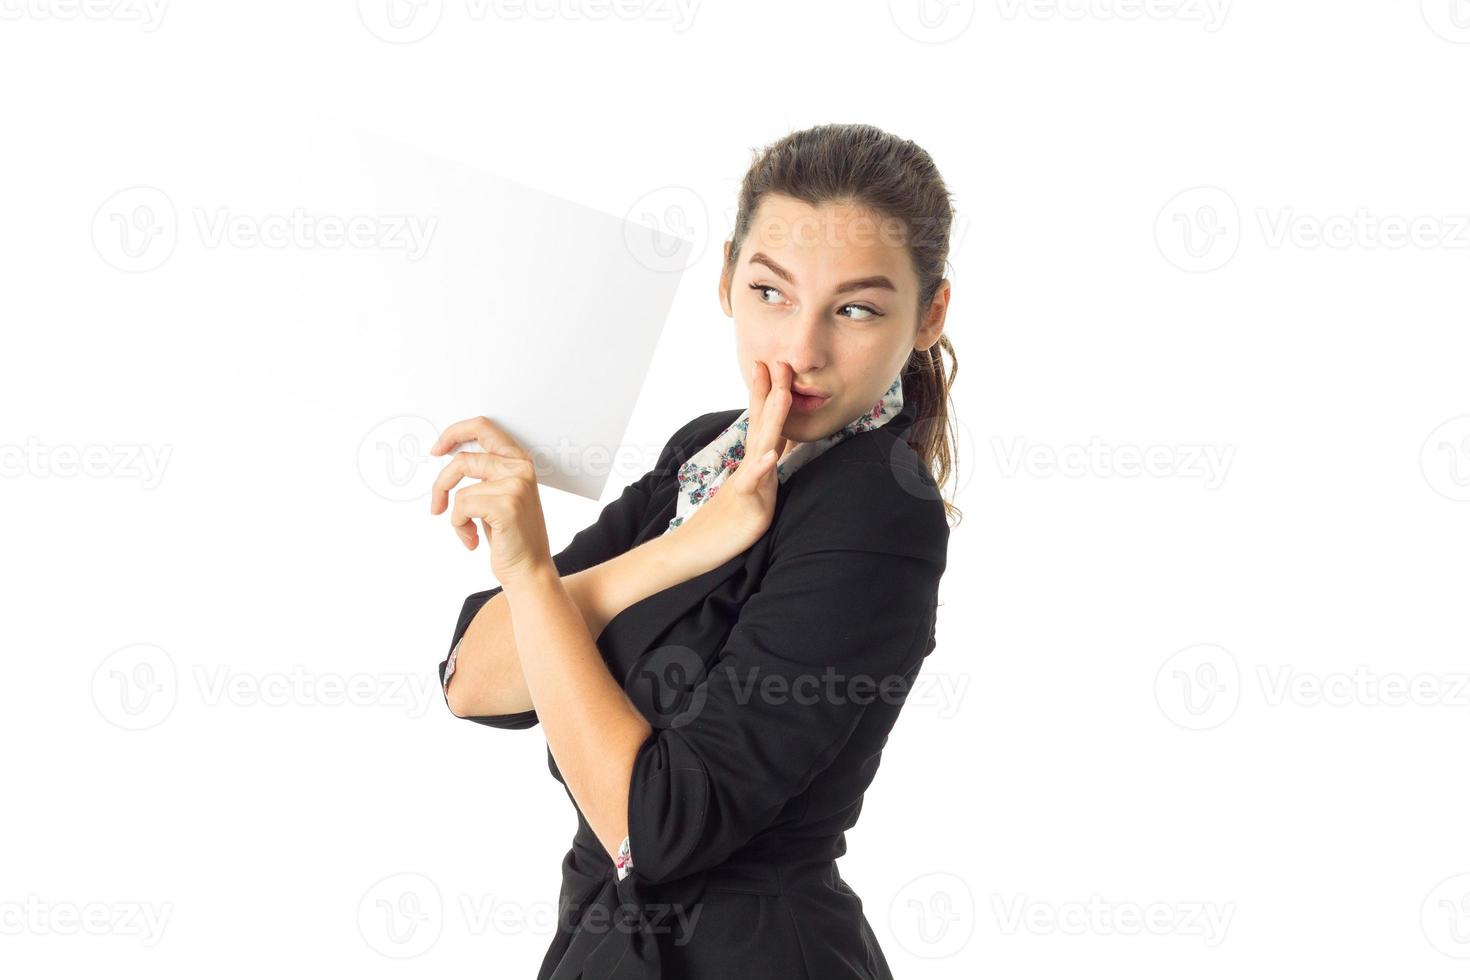 mujer en uniforme con cartel blanco en las manos foto